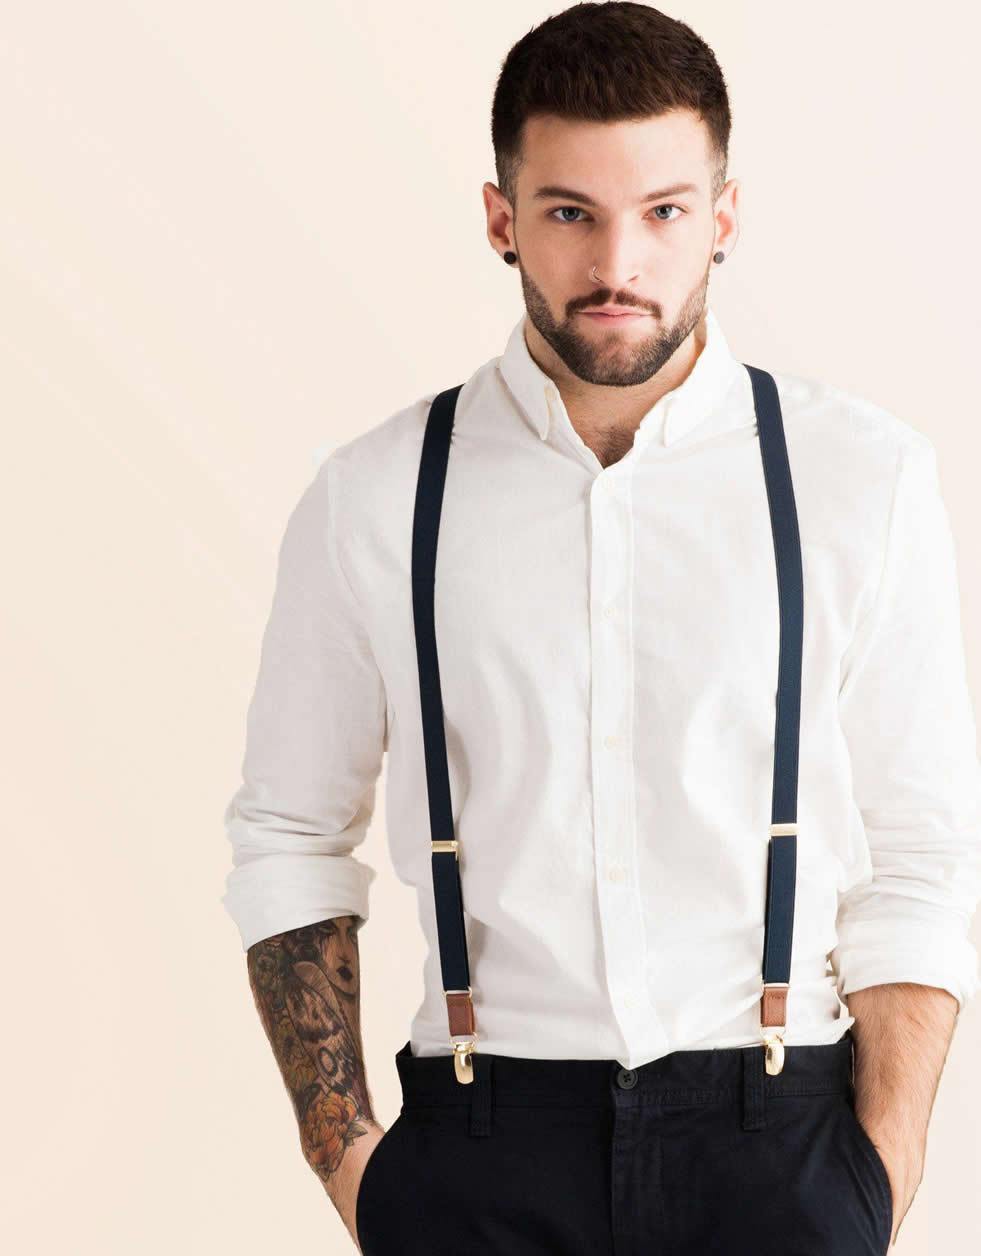 Black Shoulder Straps 4 Clips Suspenders Belt Adjustable Jacquard Yback  Suspenders For Pants